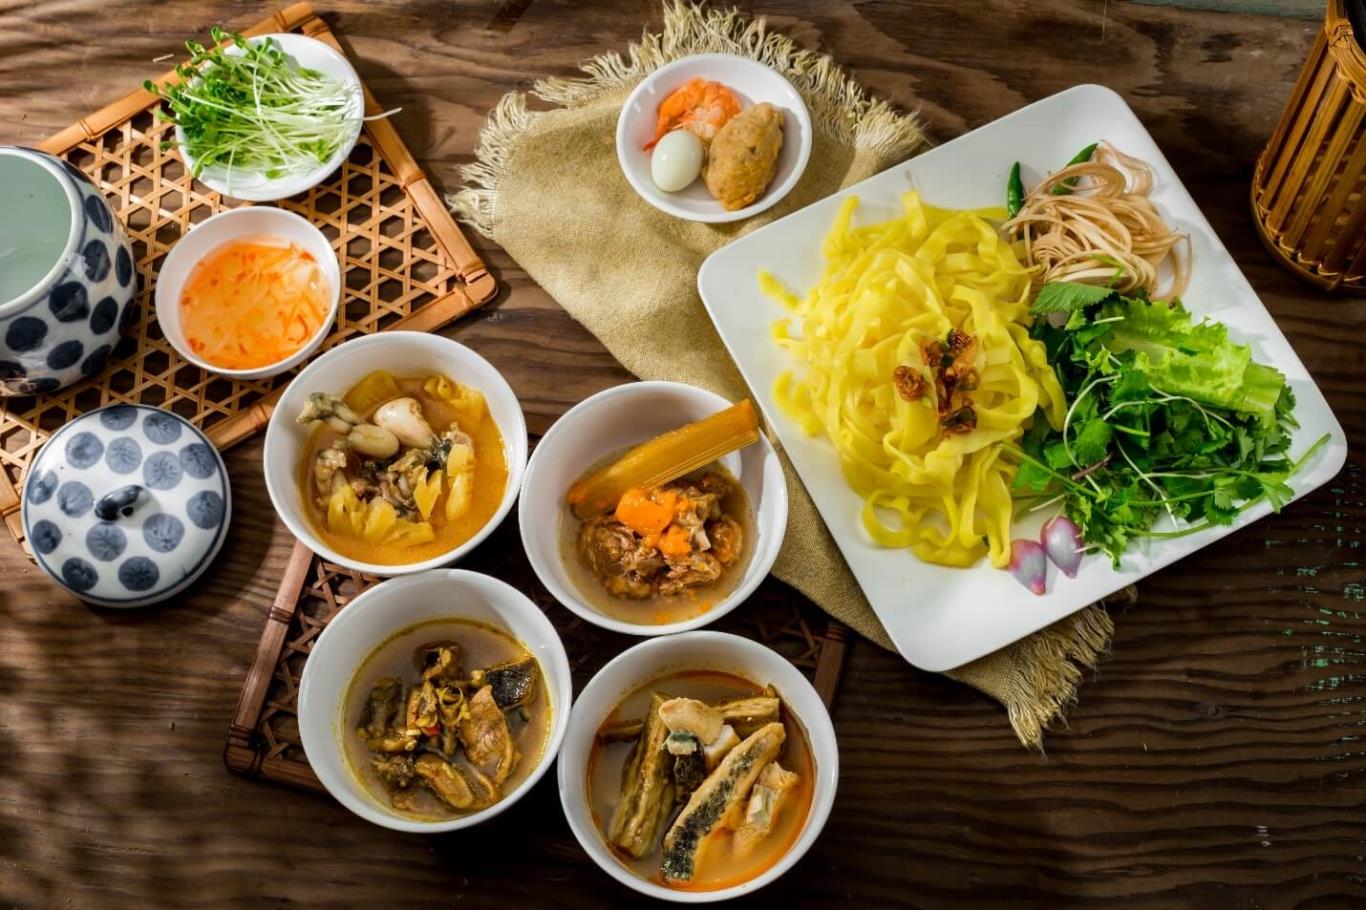 Ẩm thực Việt Nam, những món ăn lấy lòng du khách quốc tế | VIETRAVEL